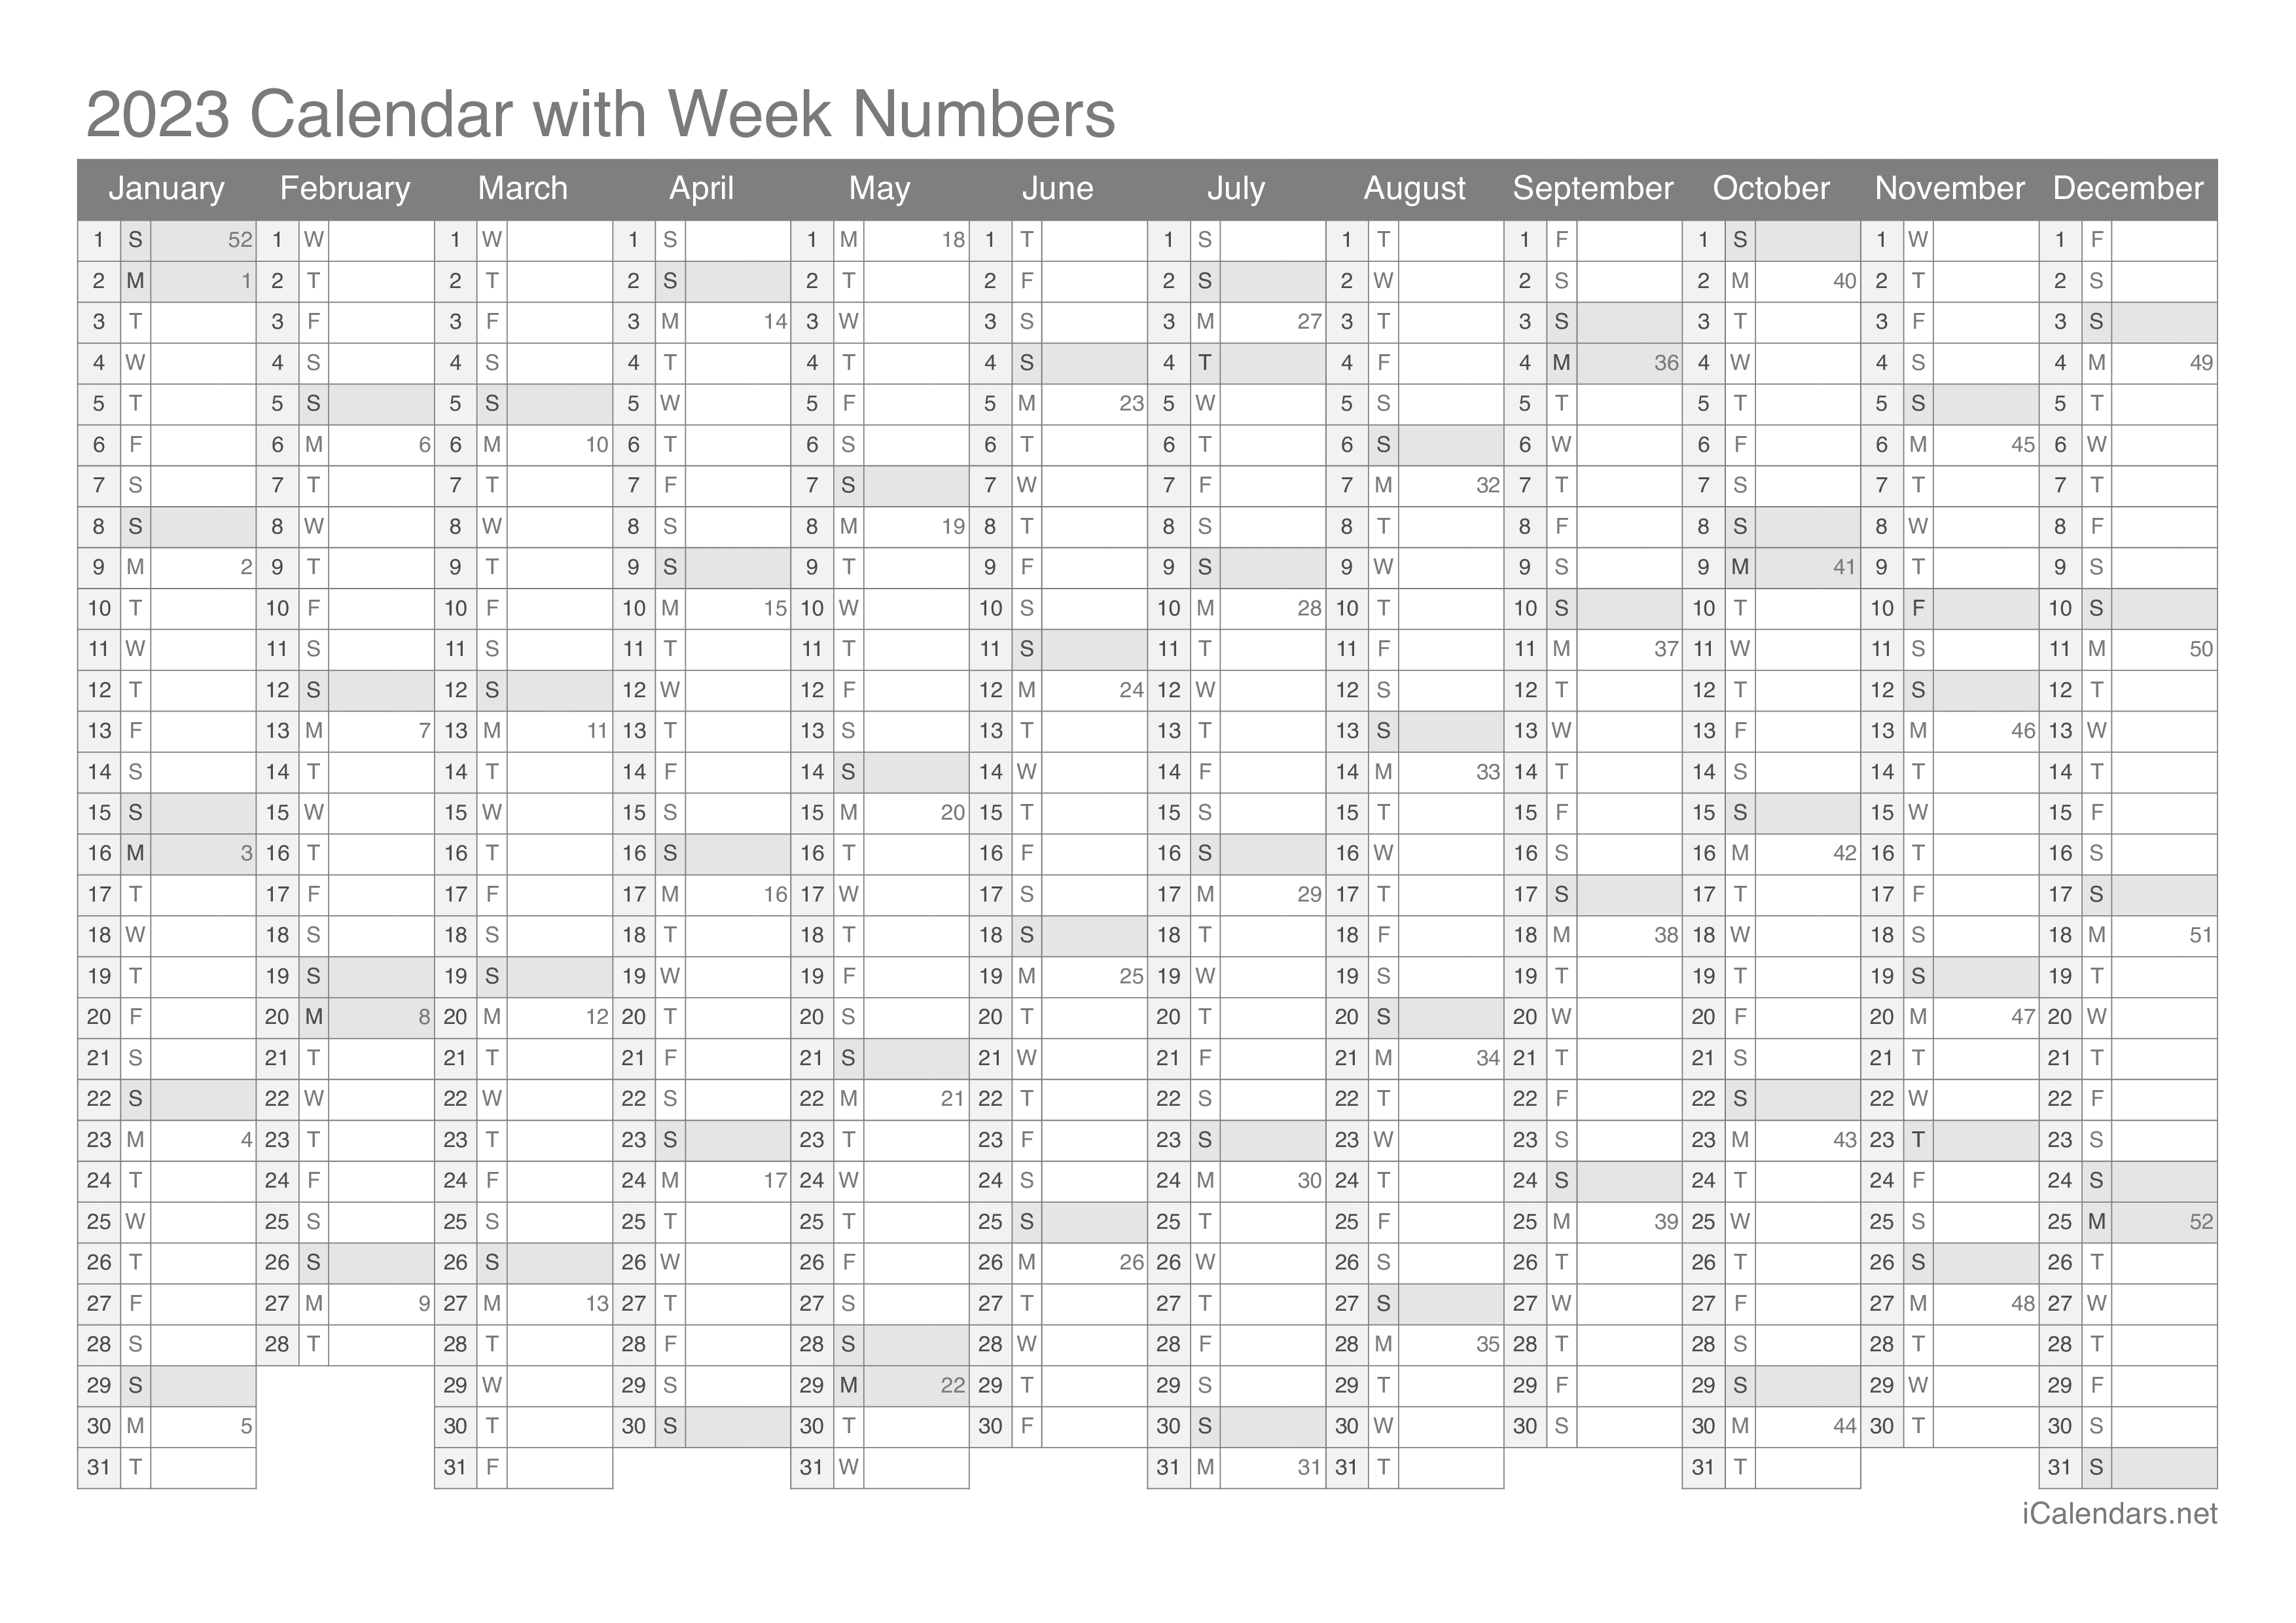 2023 Calendar with week numbers